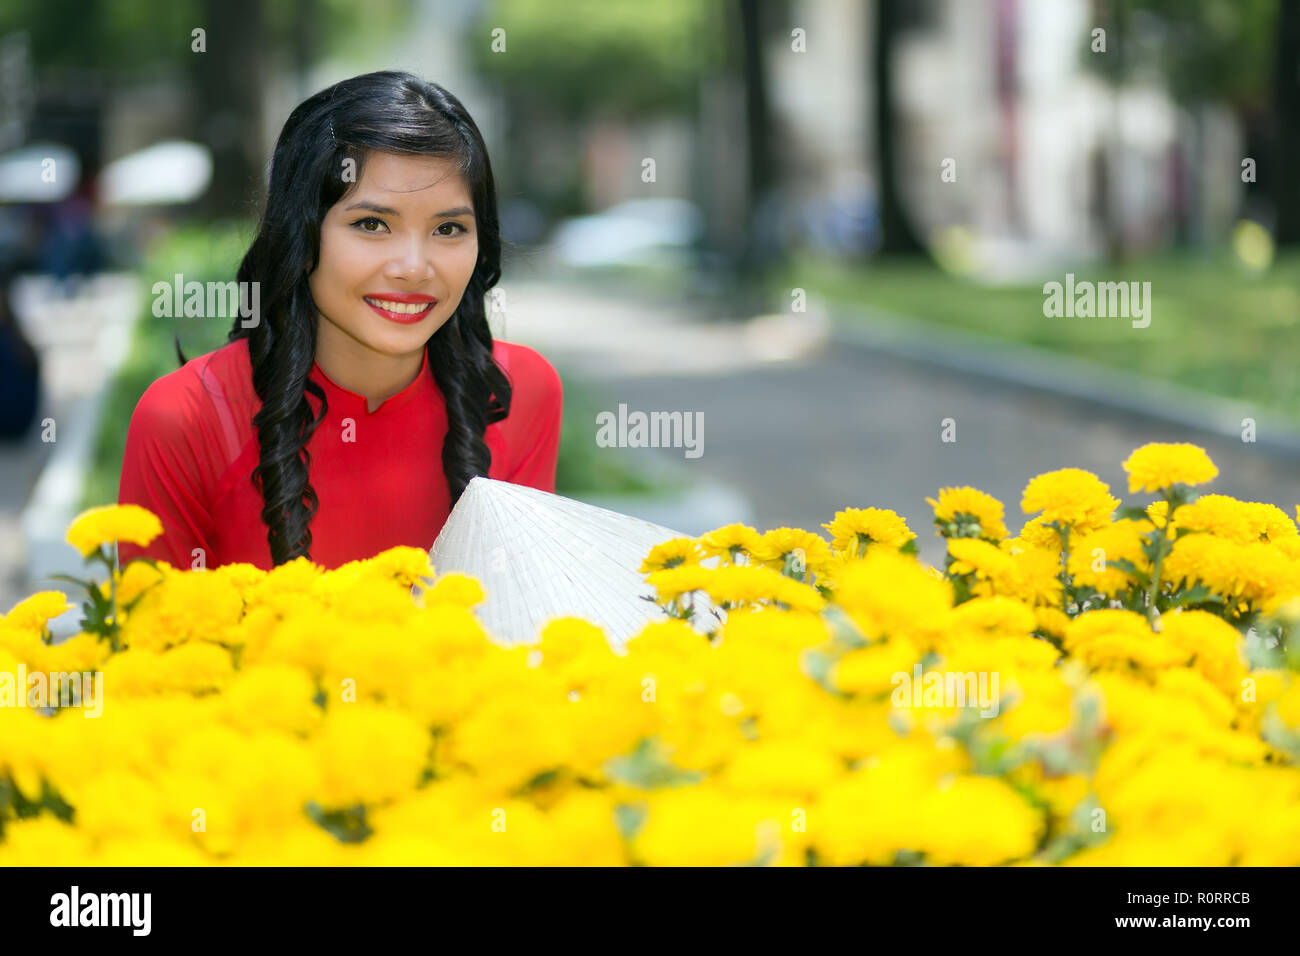 Attraente giovane vietnamita donna sorridente felicemente con la videocamera su un display di fiori gialli in una strada urbana Foto Stock